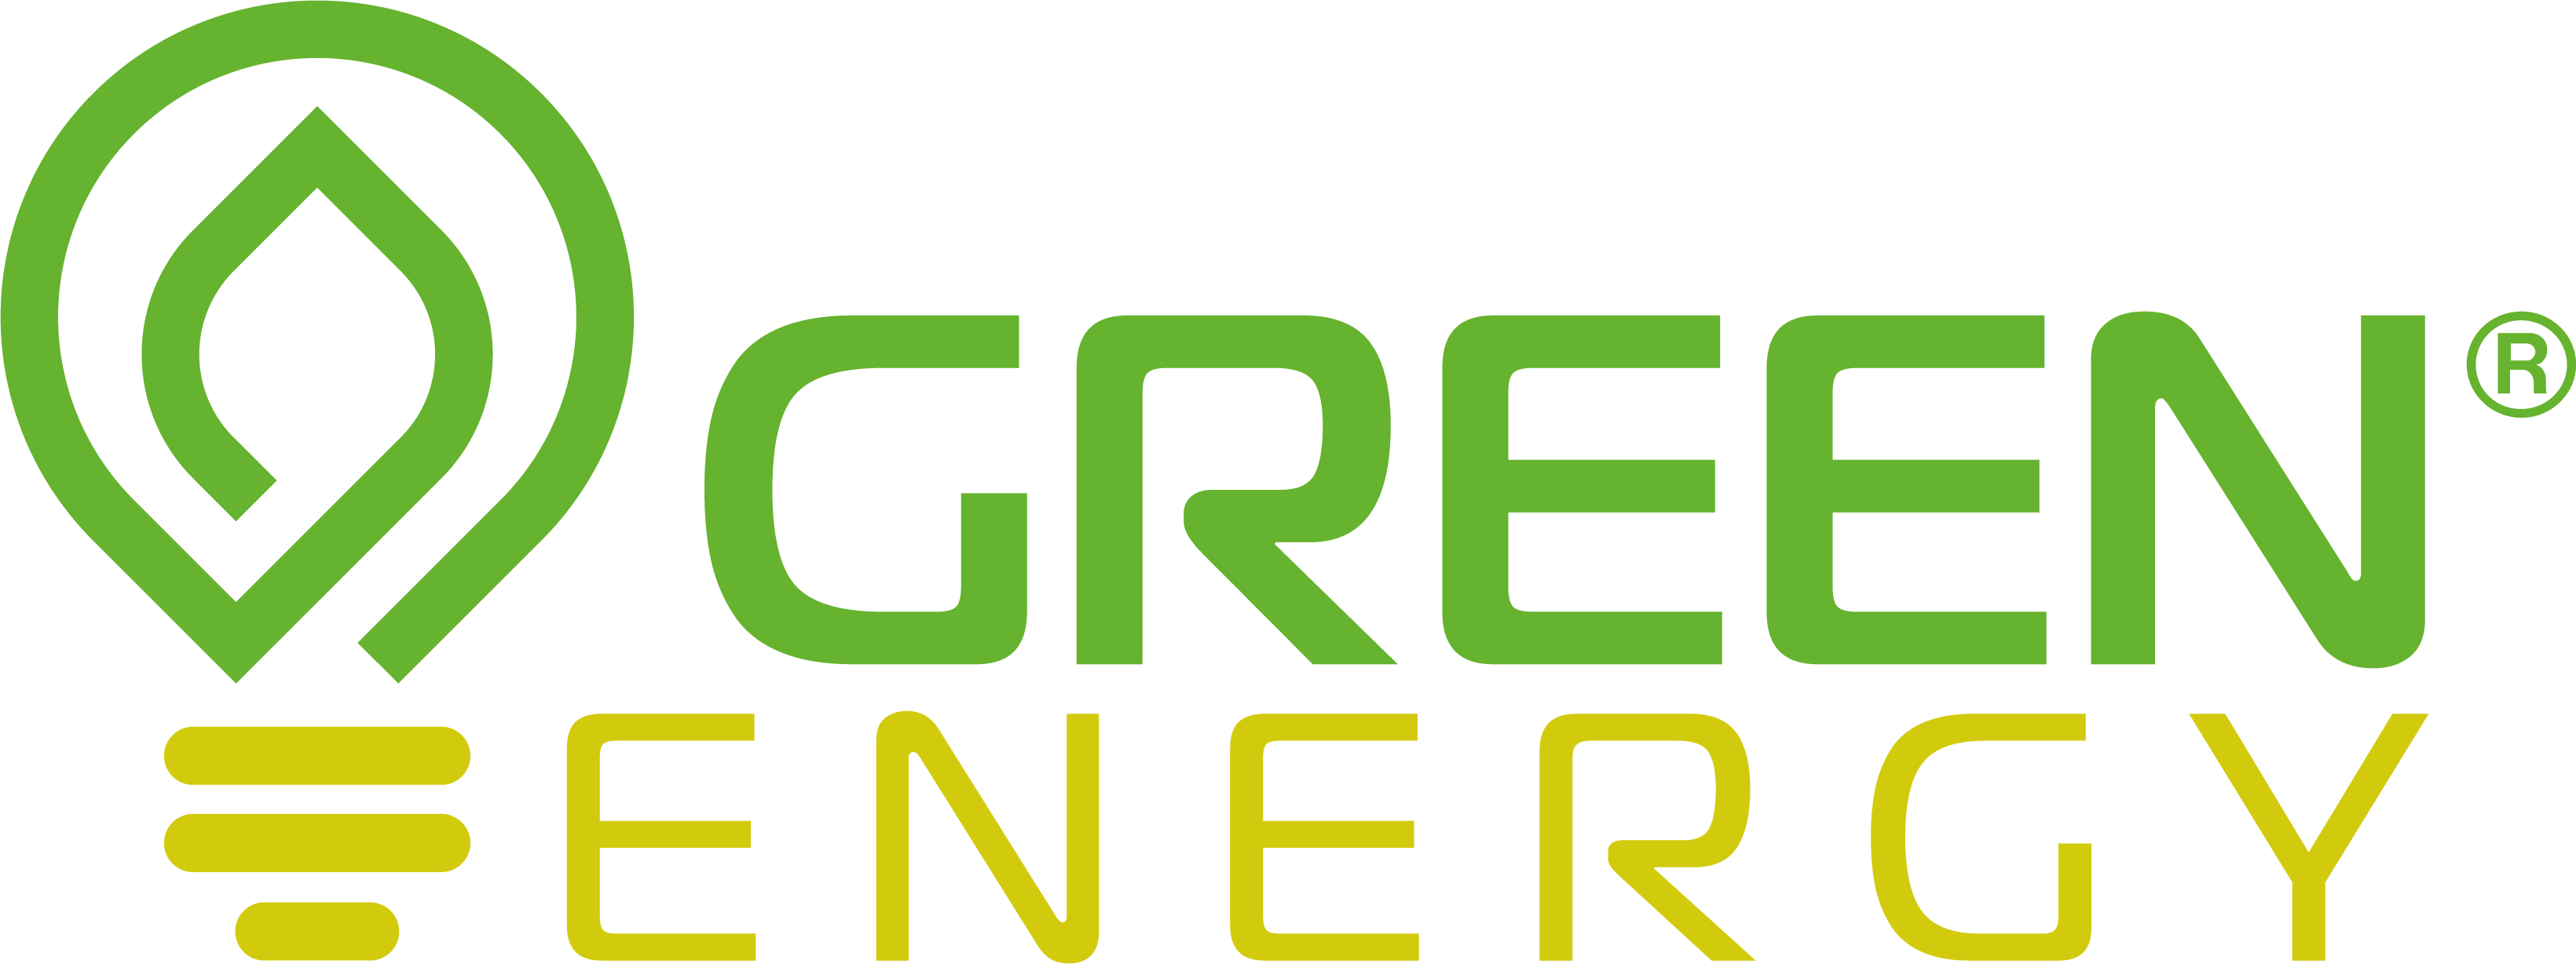 Logo Green Energy Vettoriale